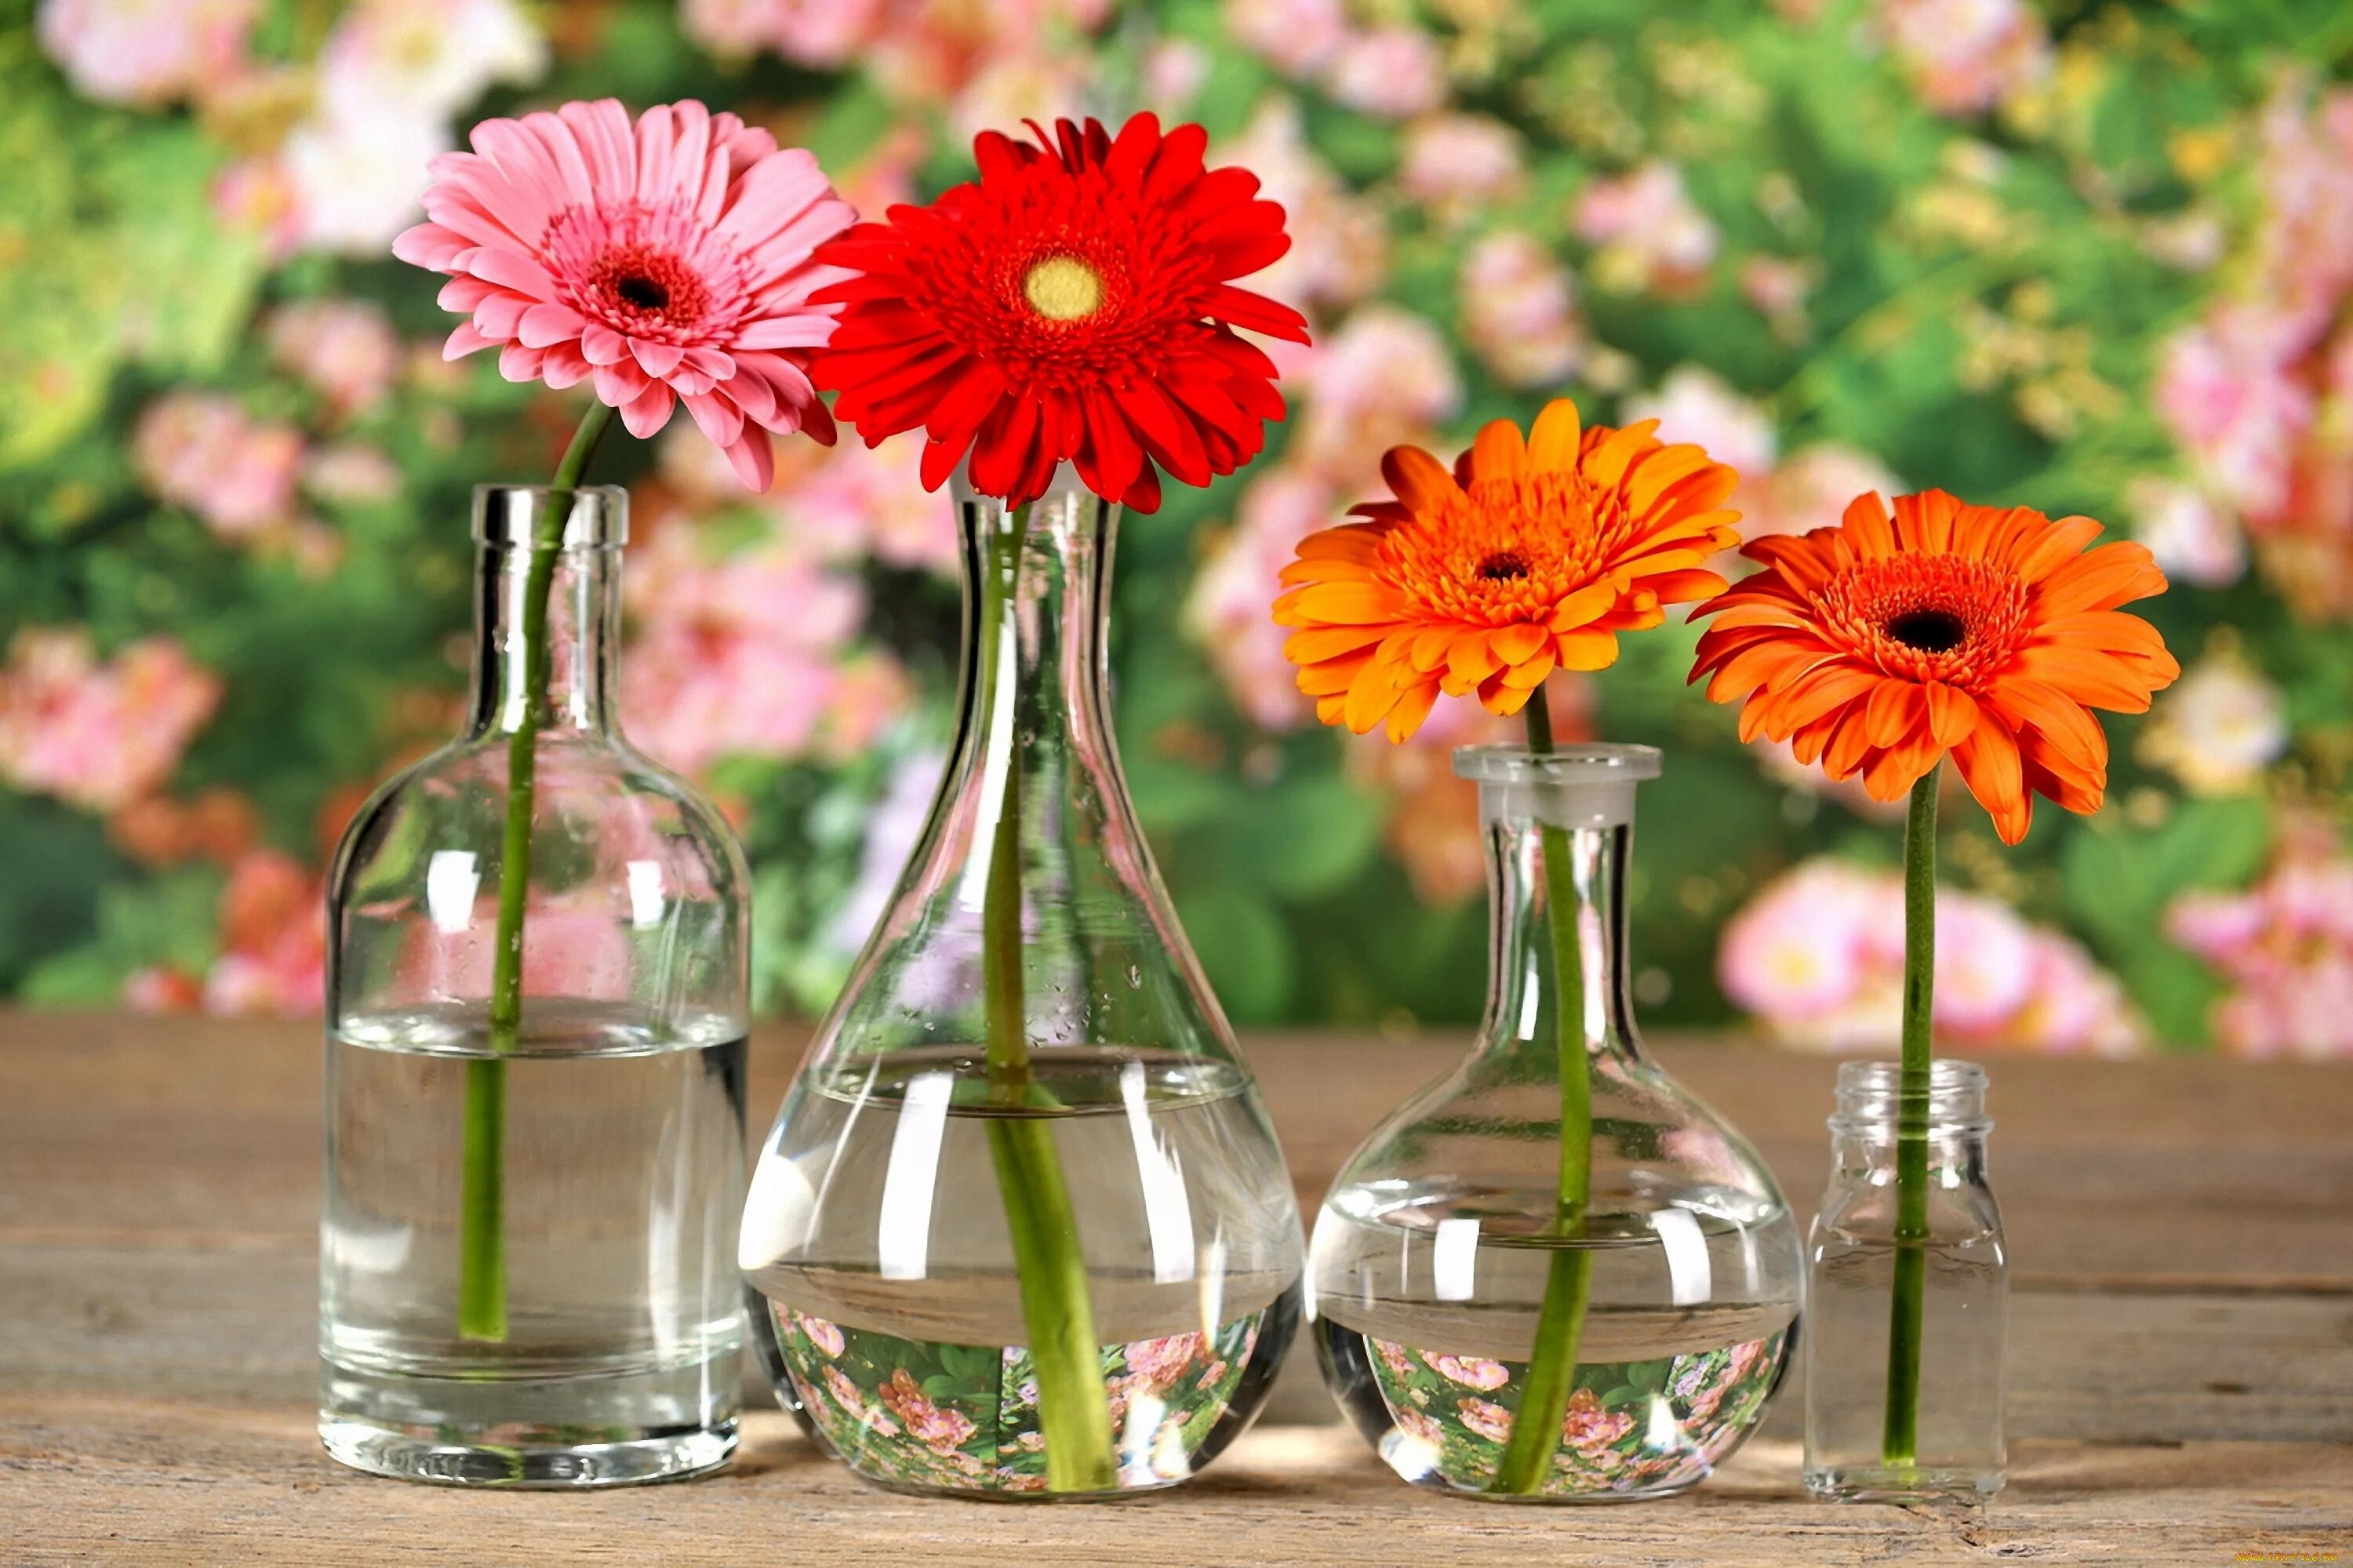 Цветы в прозрачной вазе. Цветы в бутылке. Цветочки в вазочке. Яркие цветочки в красивой вазочке. Аптека гербера